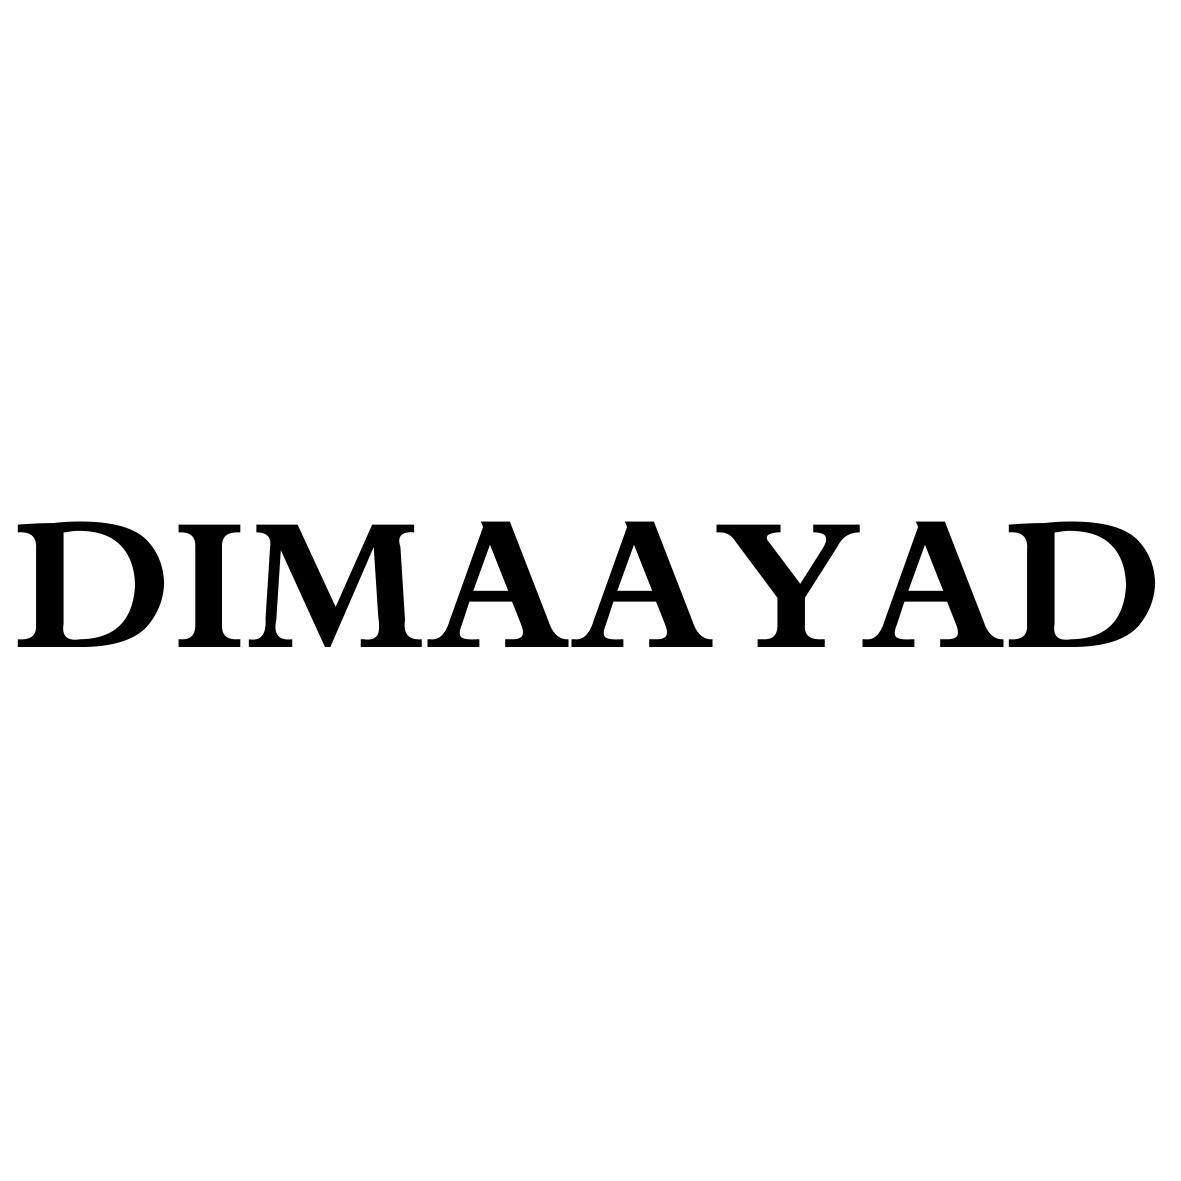 DIMAAYAD